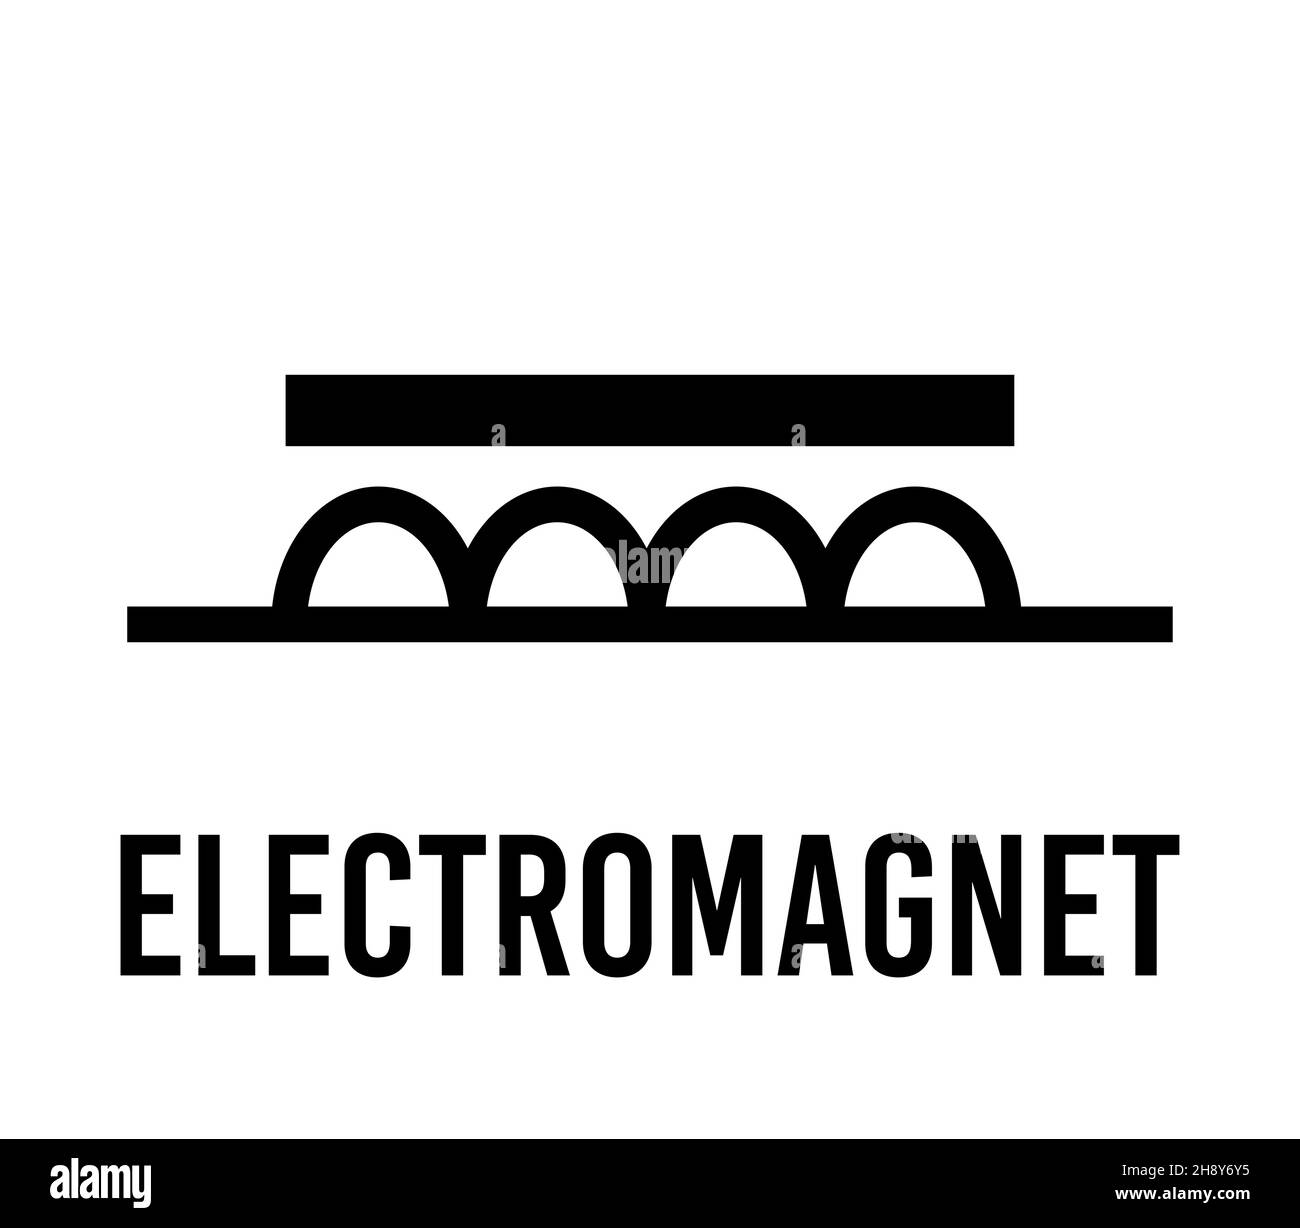 Elektromagnet elektronische Komponente, Vektor-Symbol flaches Design-Konzept. Elektrizitätsphysik-Programm für Bildung. Schwarz auf weißem Hintergrund. Stock Vektor